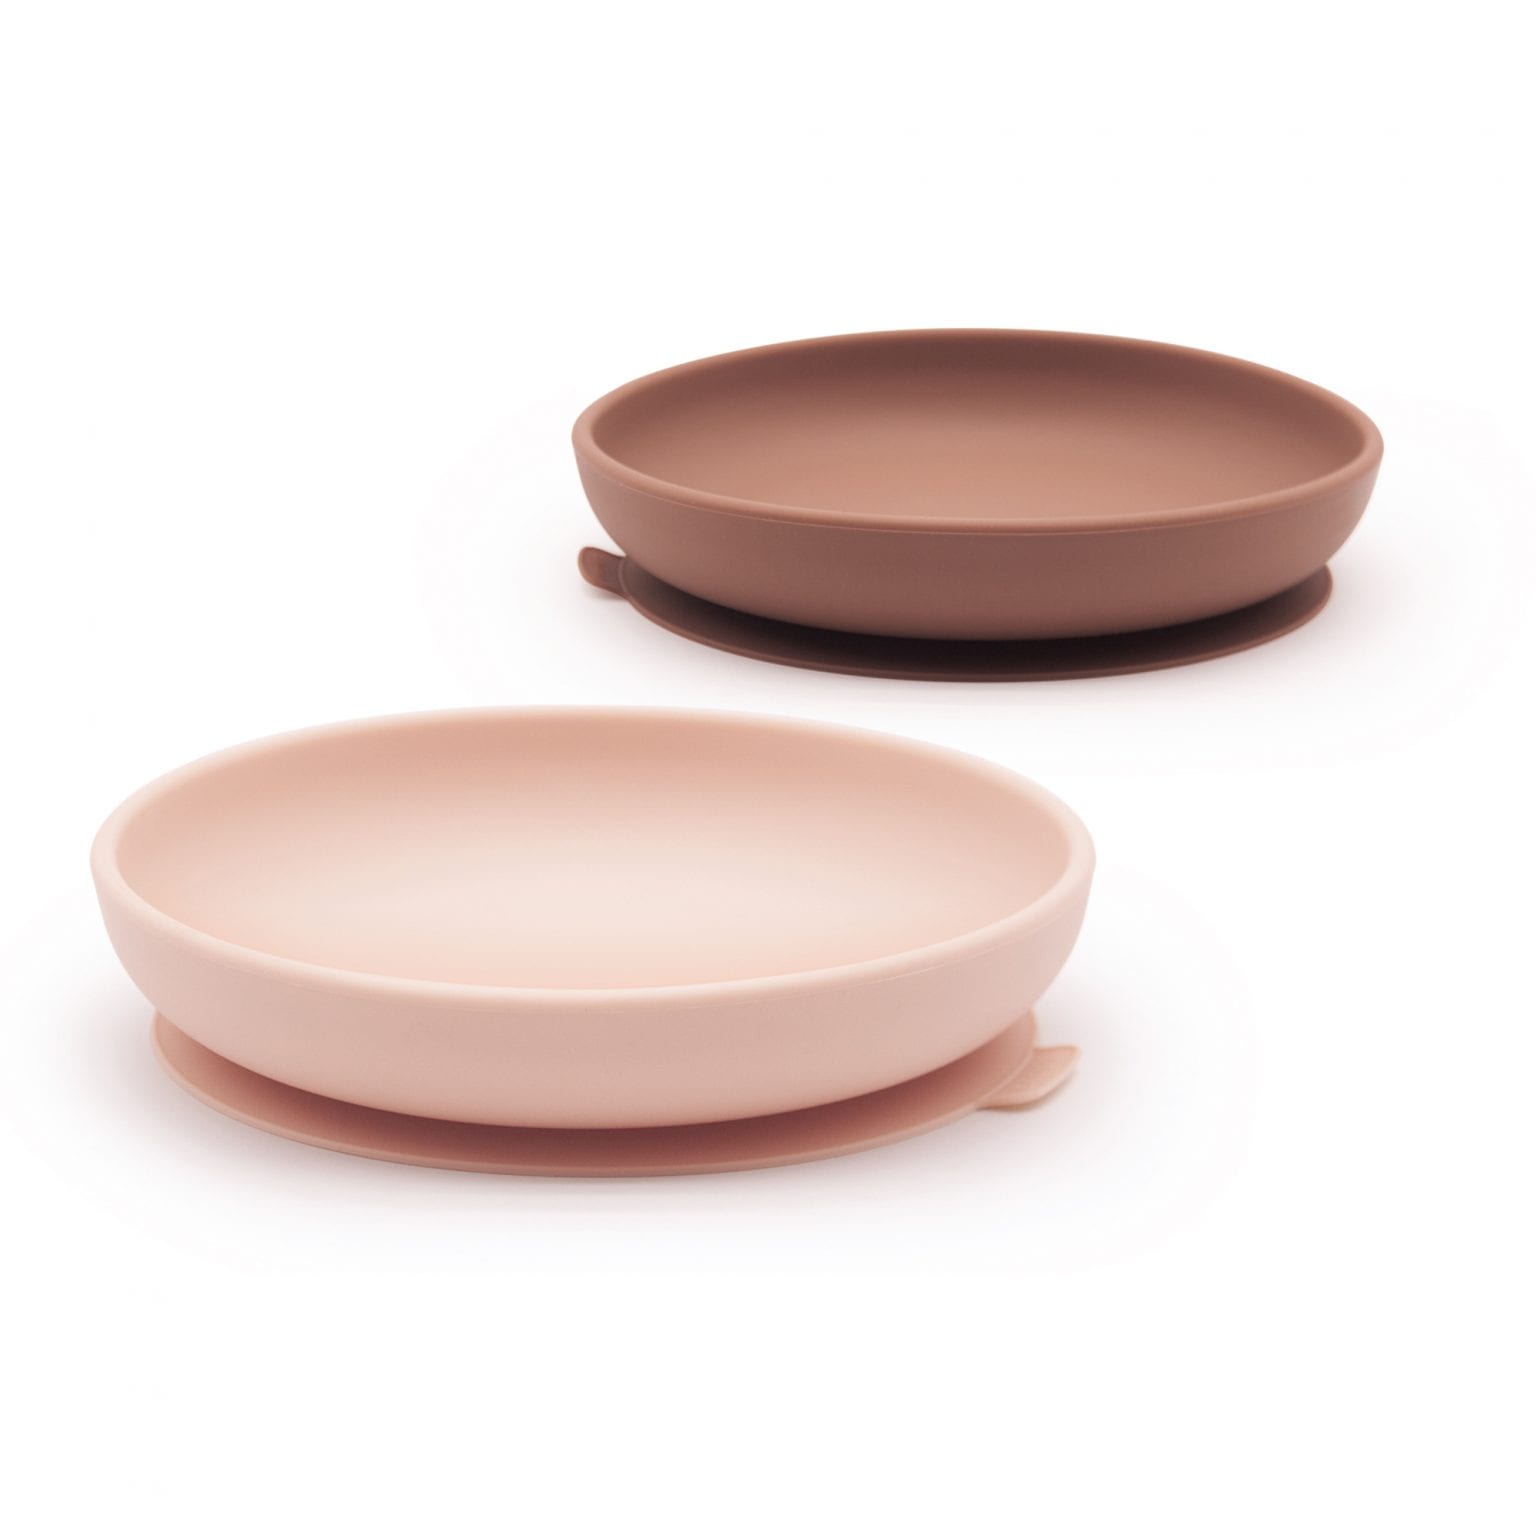 Zestaw dwóch silikonowych talerzy dla dzieci w kolorze różowy/ceglany od Ekobo